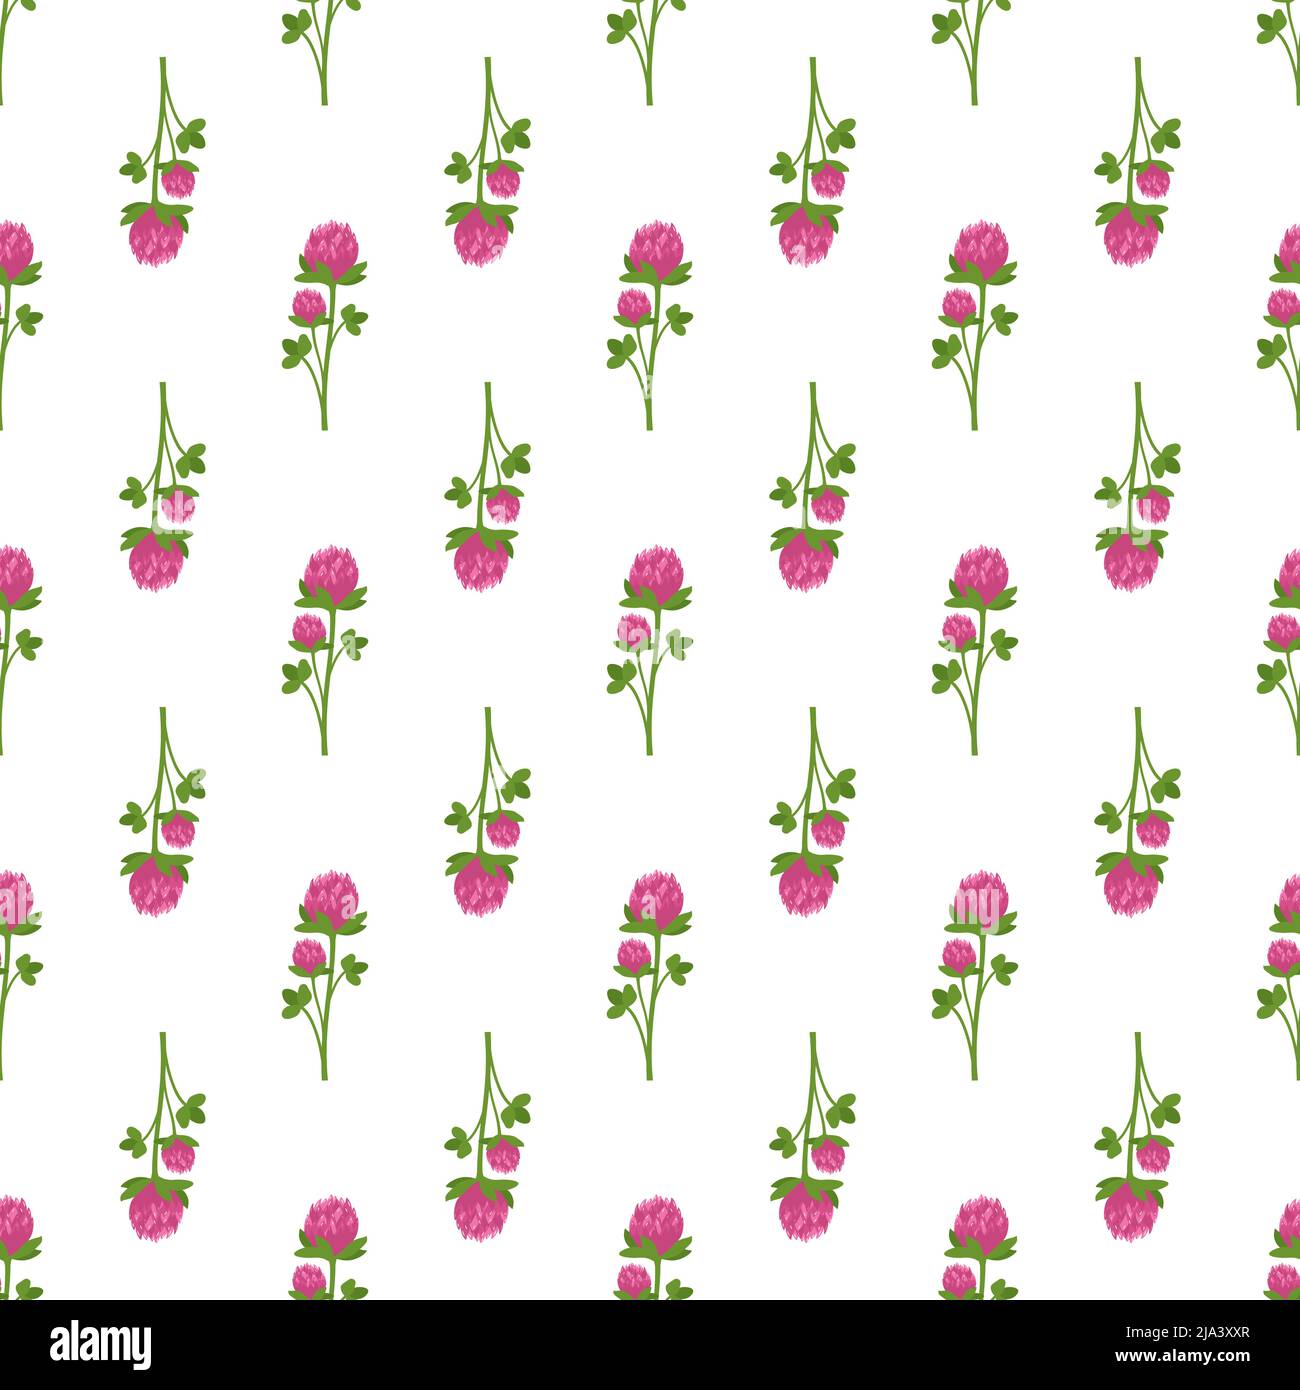 Diseño de primavera sin costuras con trébol de flores con pétalos rosas y hojas verdes de shamrock sobre fondo blanco. Estampado de plantas de verano. Ilustración de vector plano Ilustración del Vector